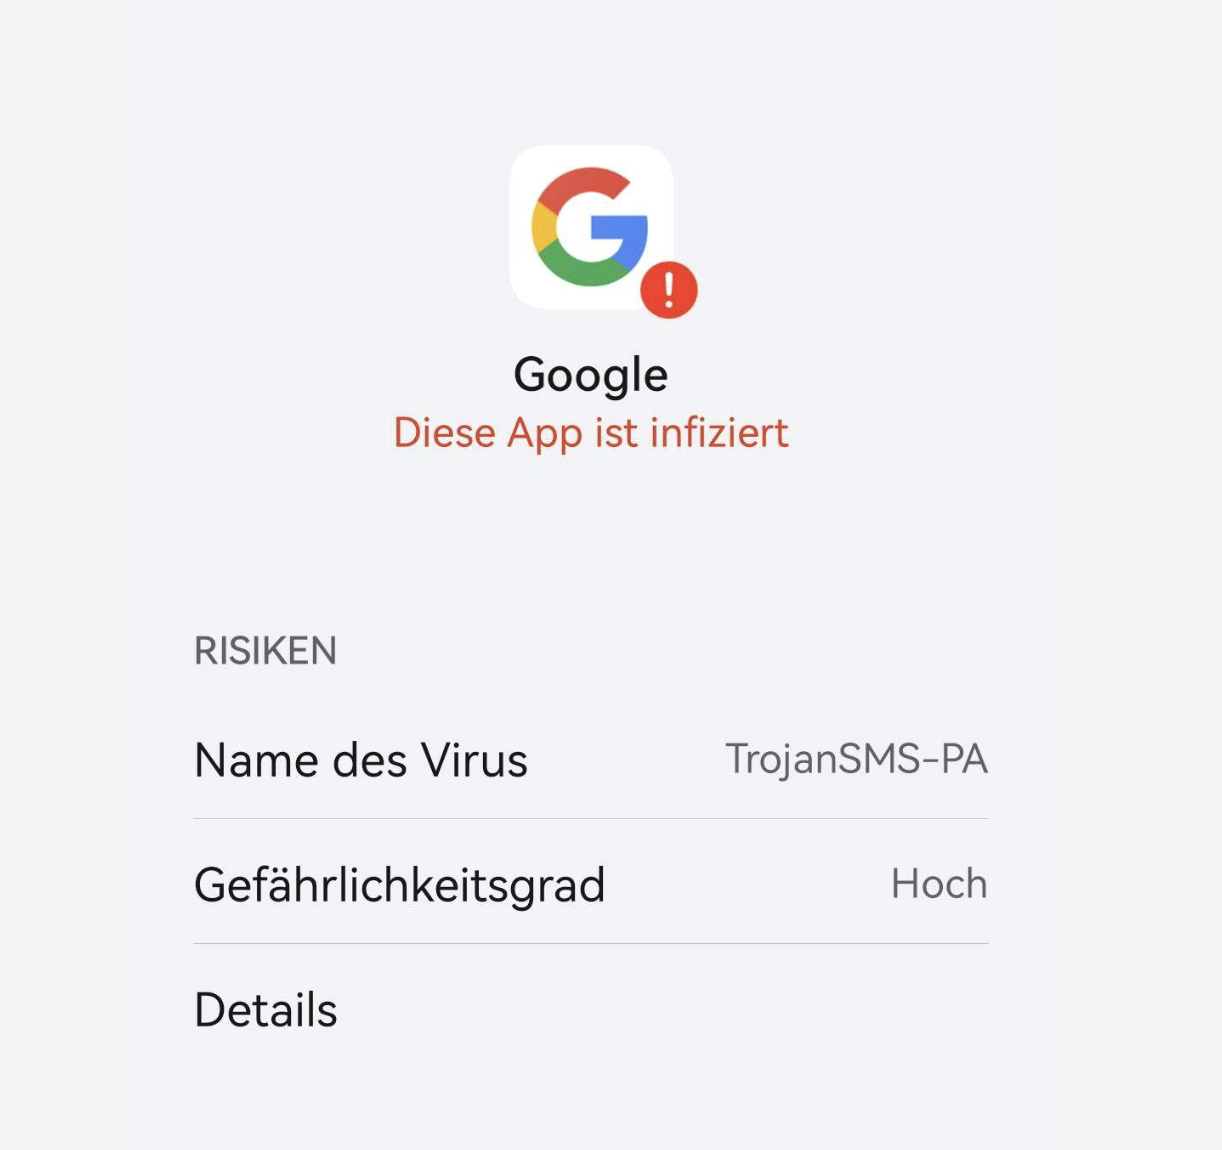 Google - Diese App ist infiziert